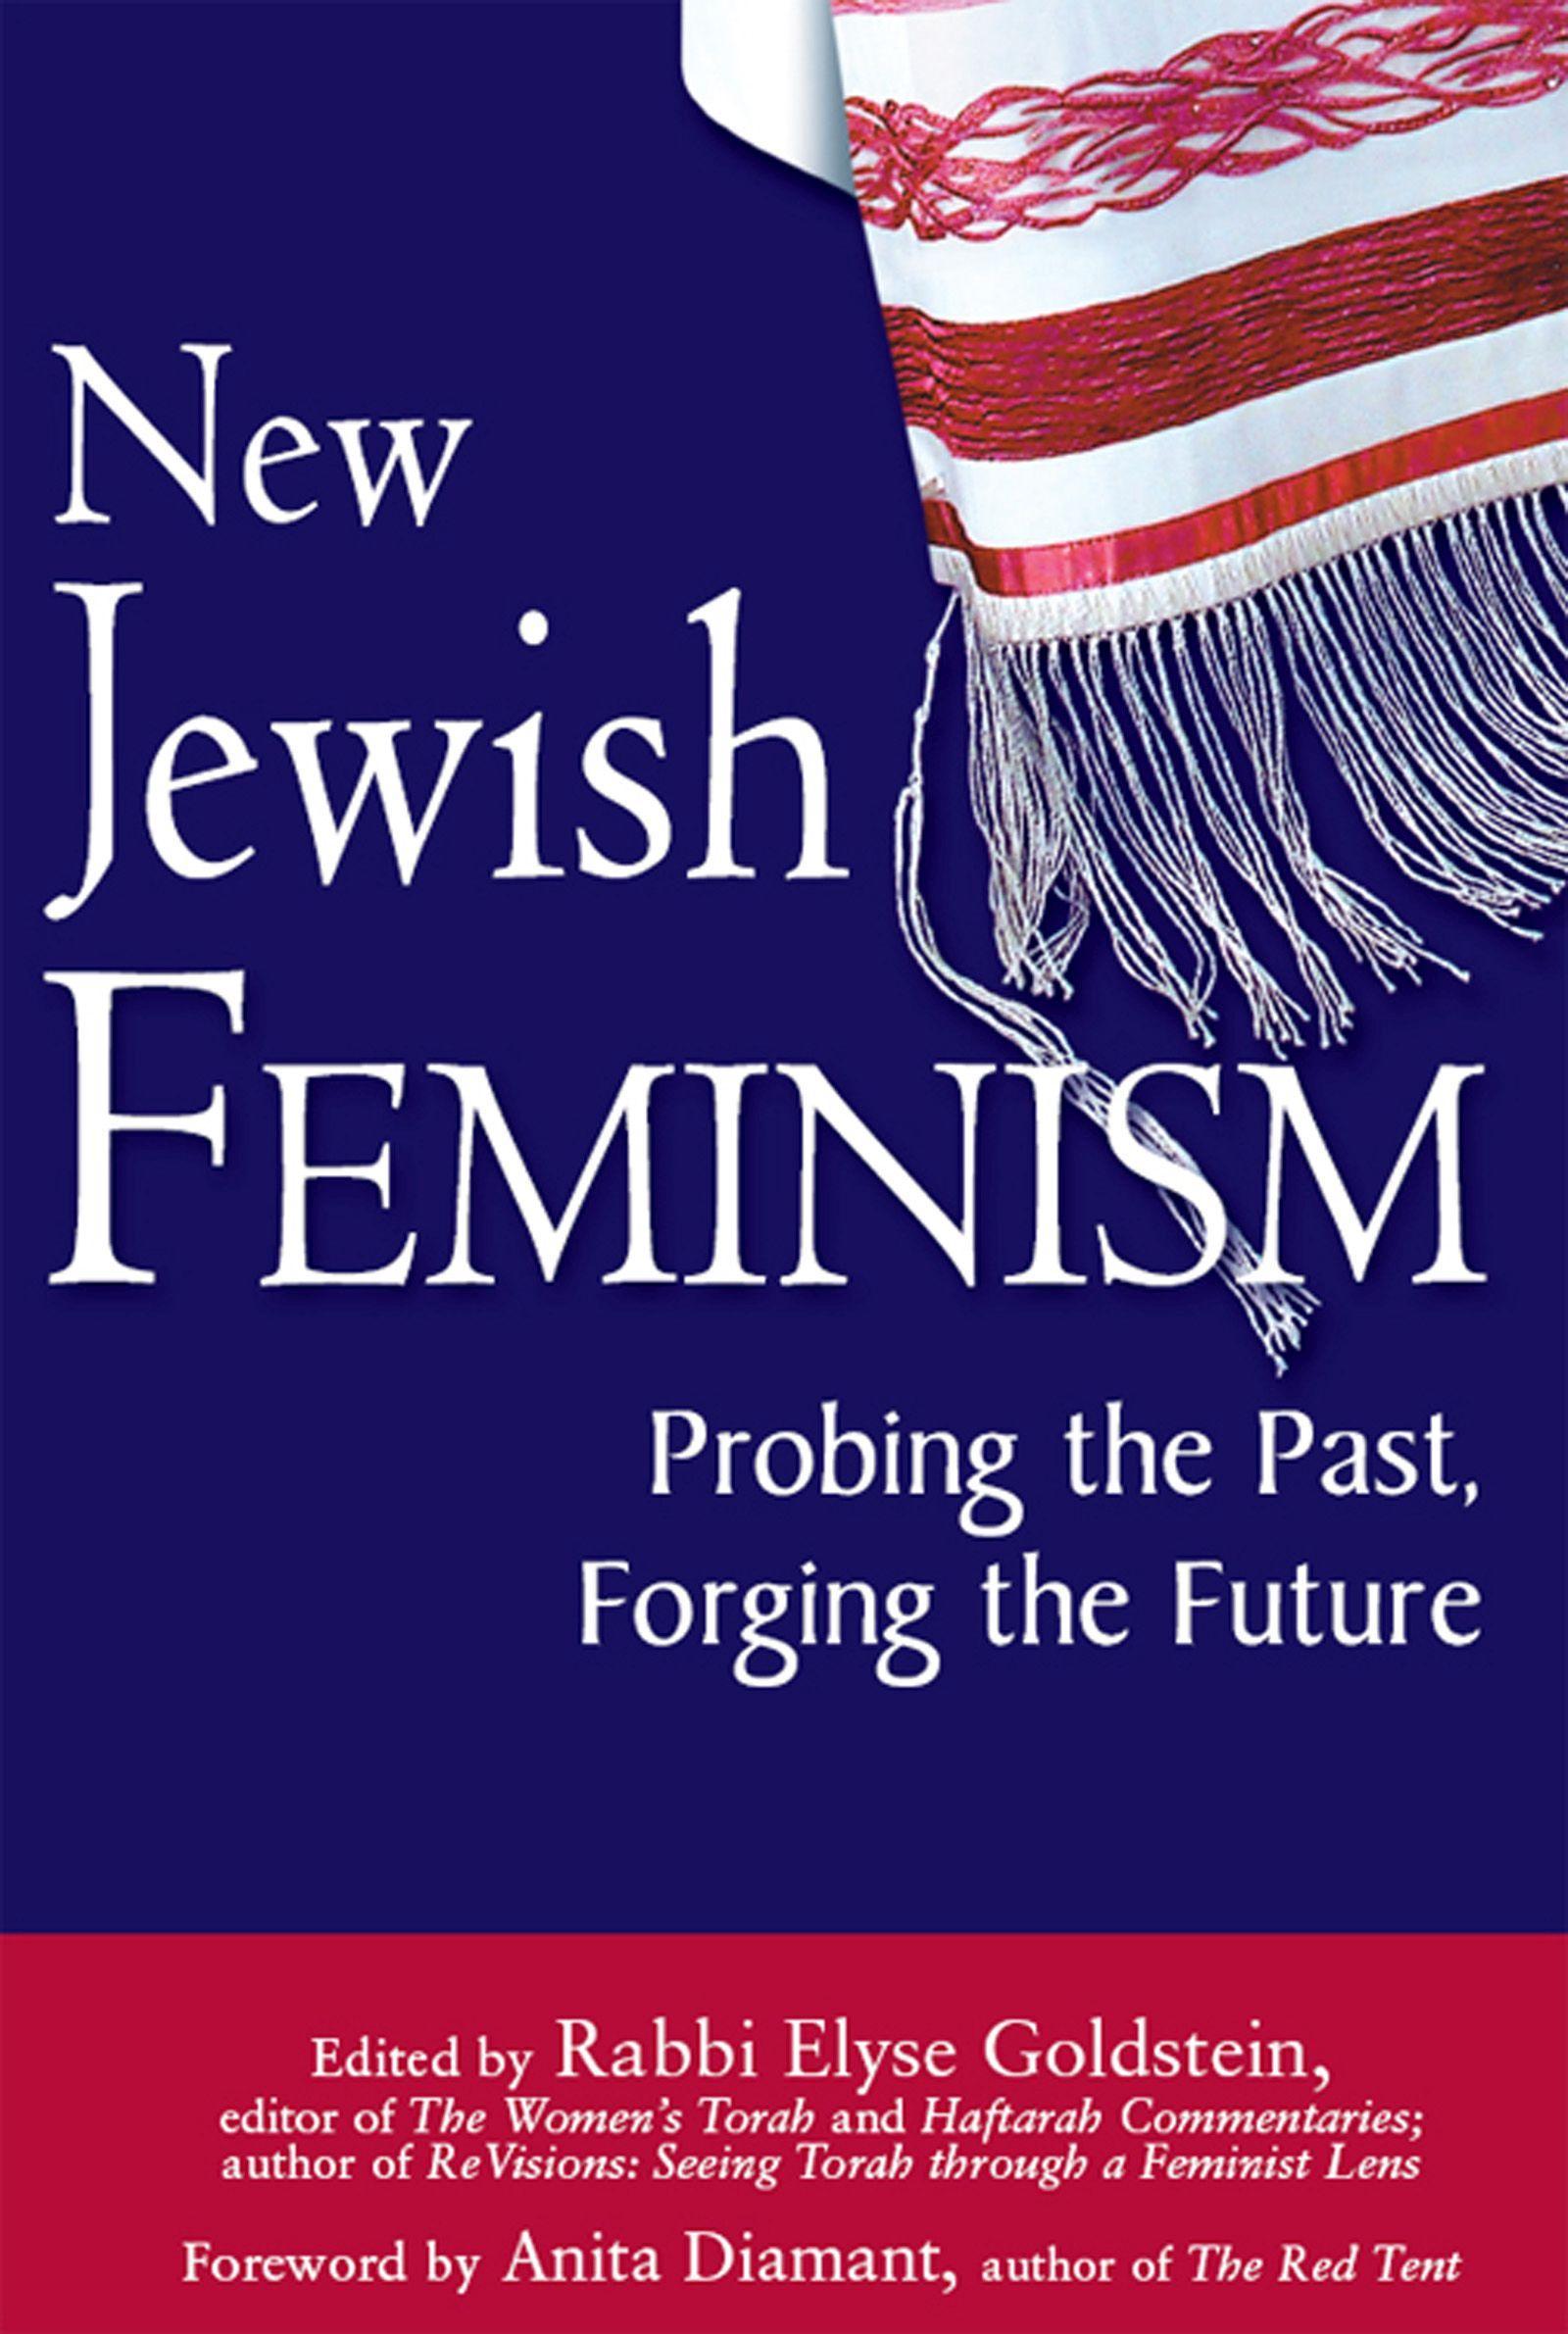 New Jewish Feminism: Probing the Past, Forging the Future / Elyse Goldstein / Buch / Gebunden / Englisch / 2008 / JEWISH LIGHTS PUB / EAN 9781580233590 - Goldstein, Elyse